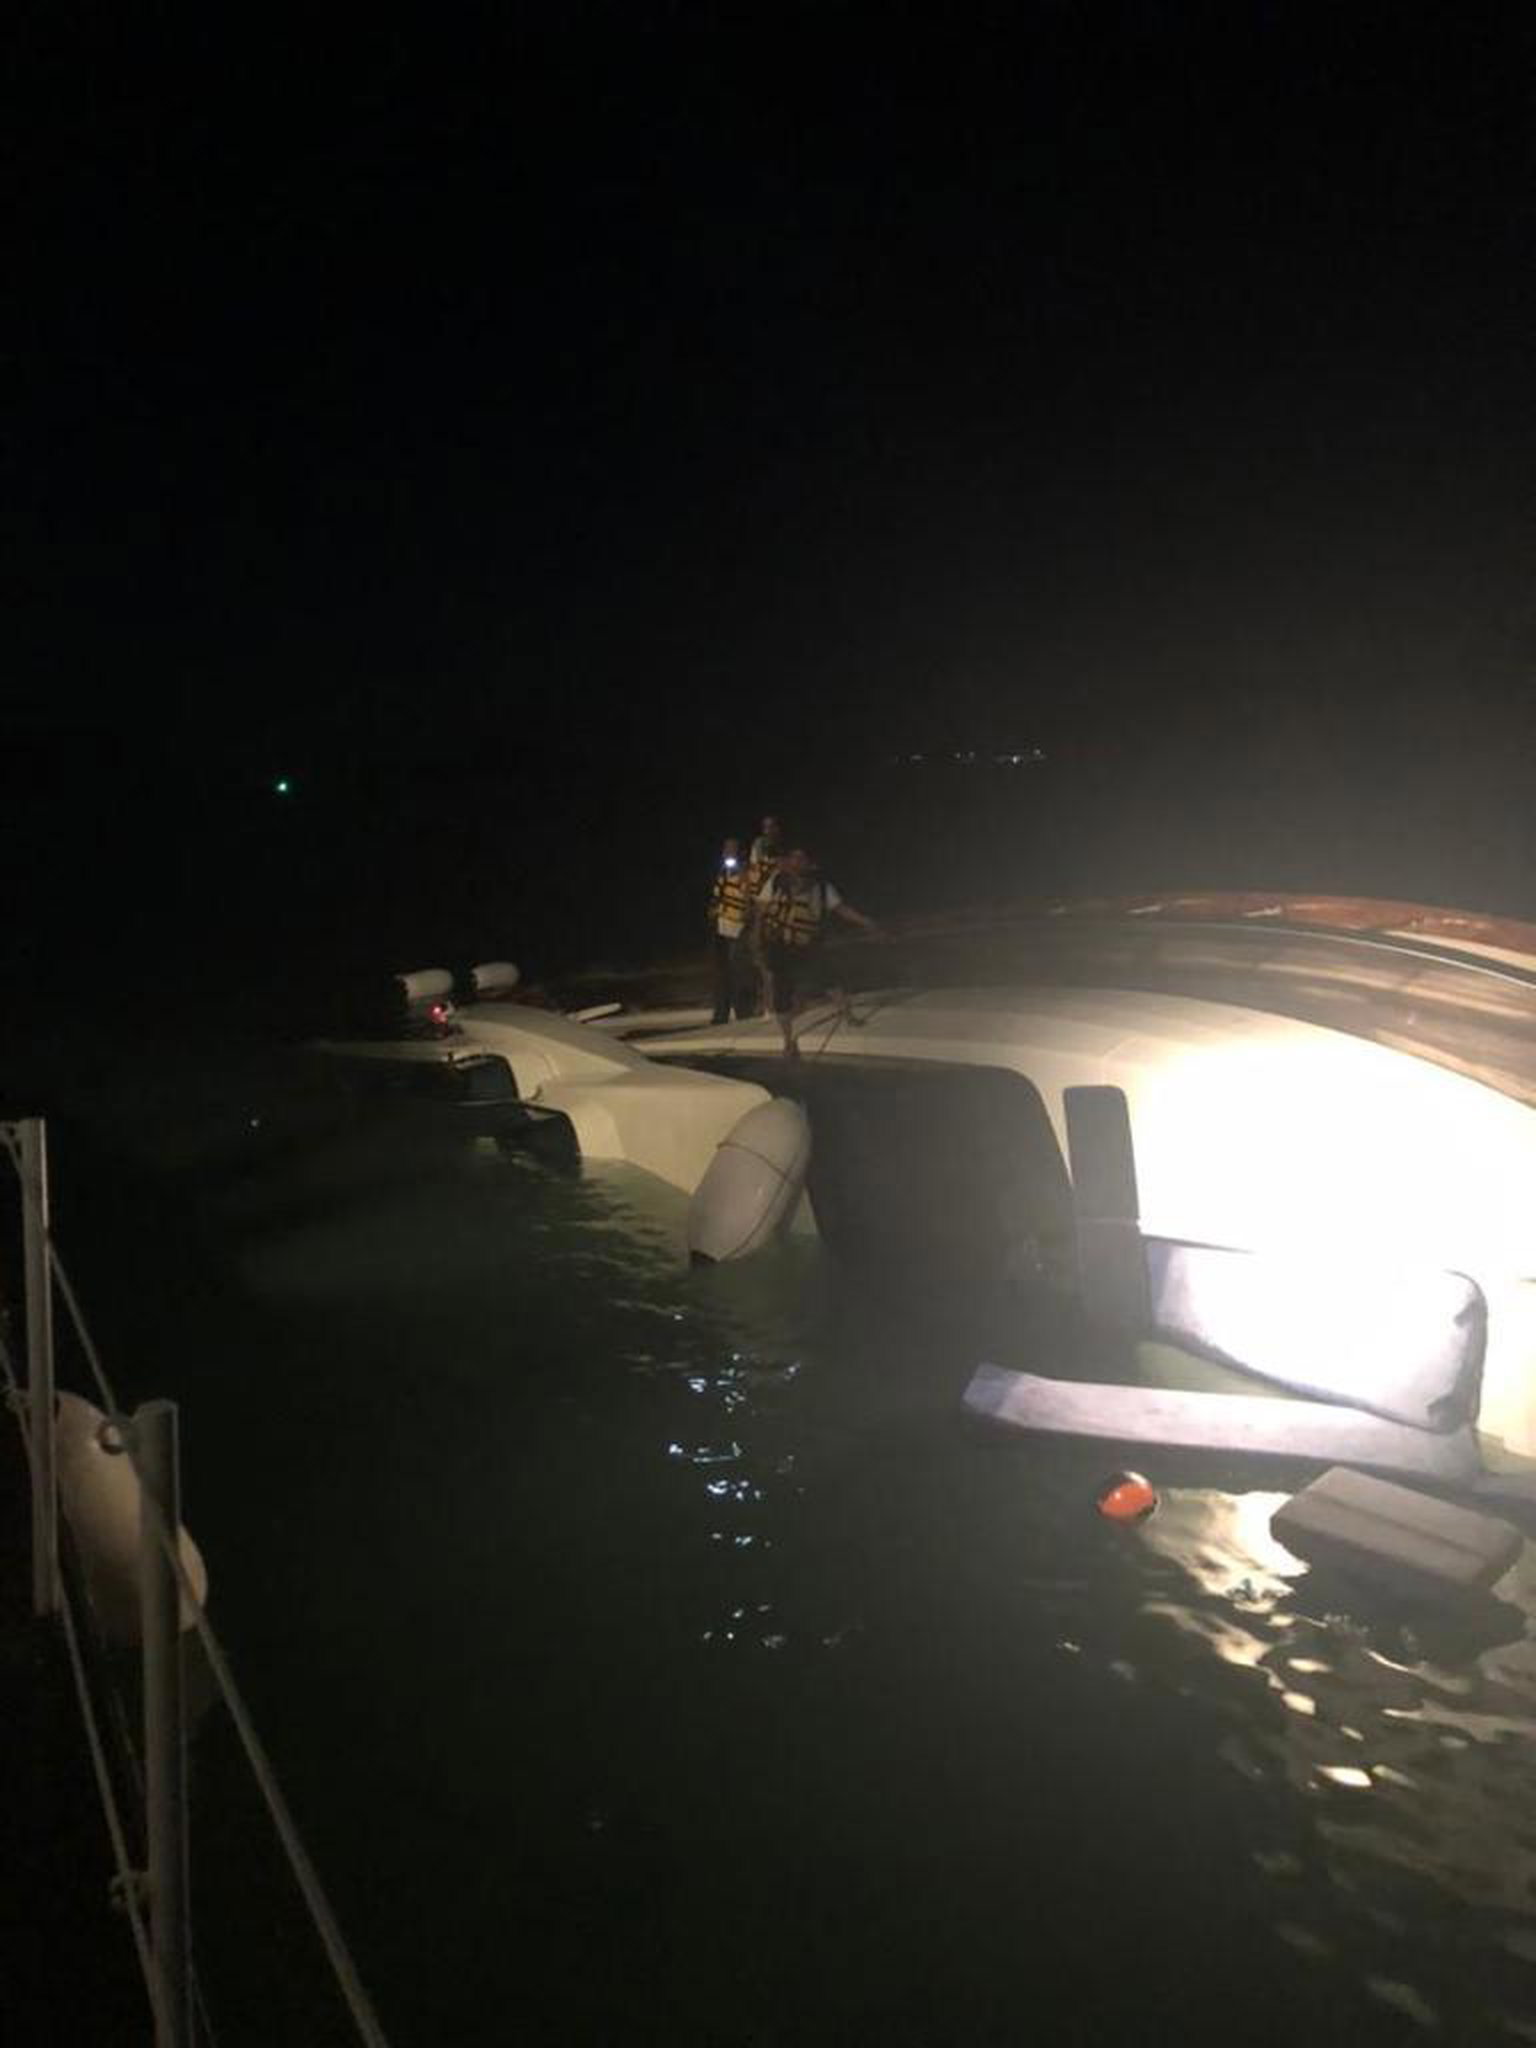 涉及的邮轮相信是撞及一物体，导致船体几乎沉没在拉浪岛一带的海域。